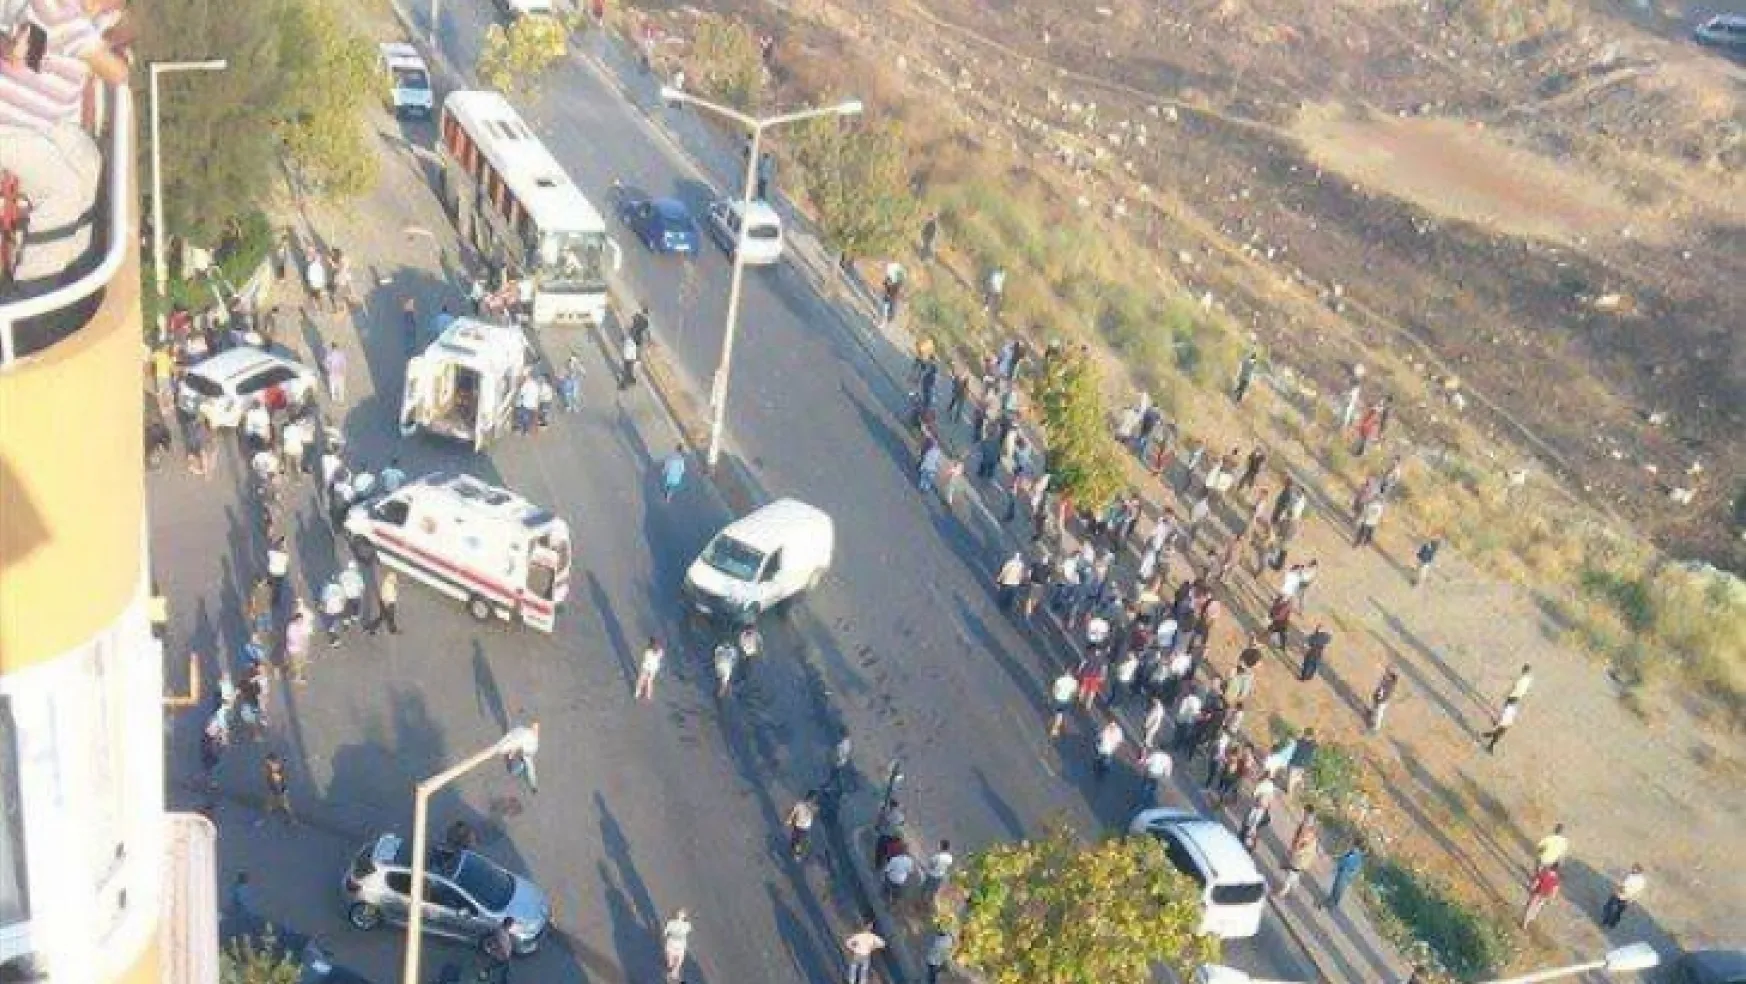 Sondakika İzmir Buca'da cezaevi servis aracına bombalı saldırı